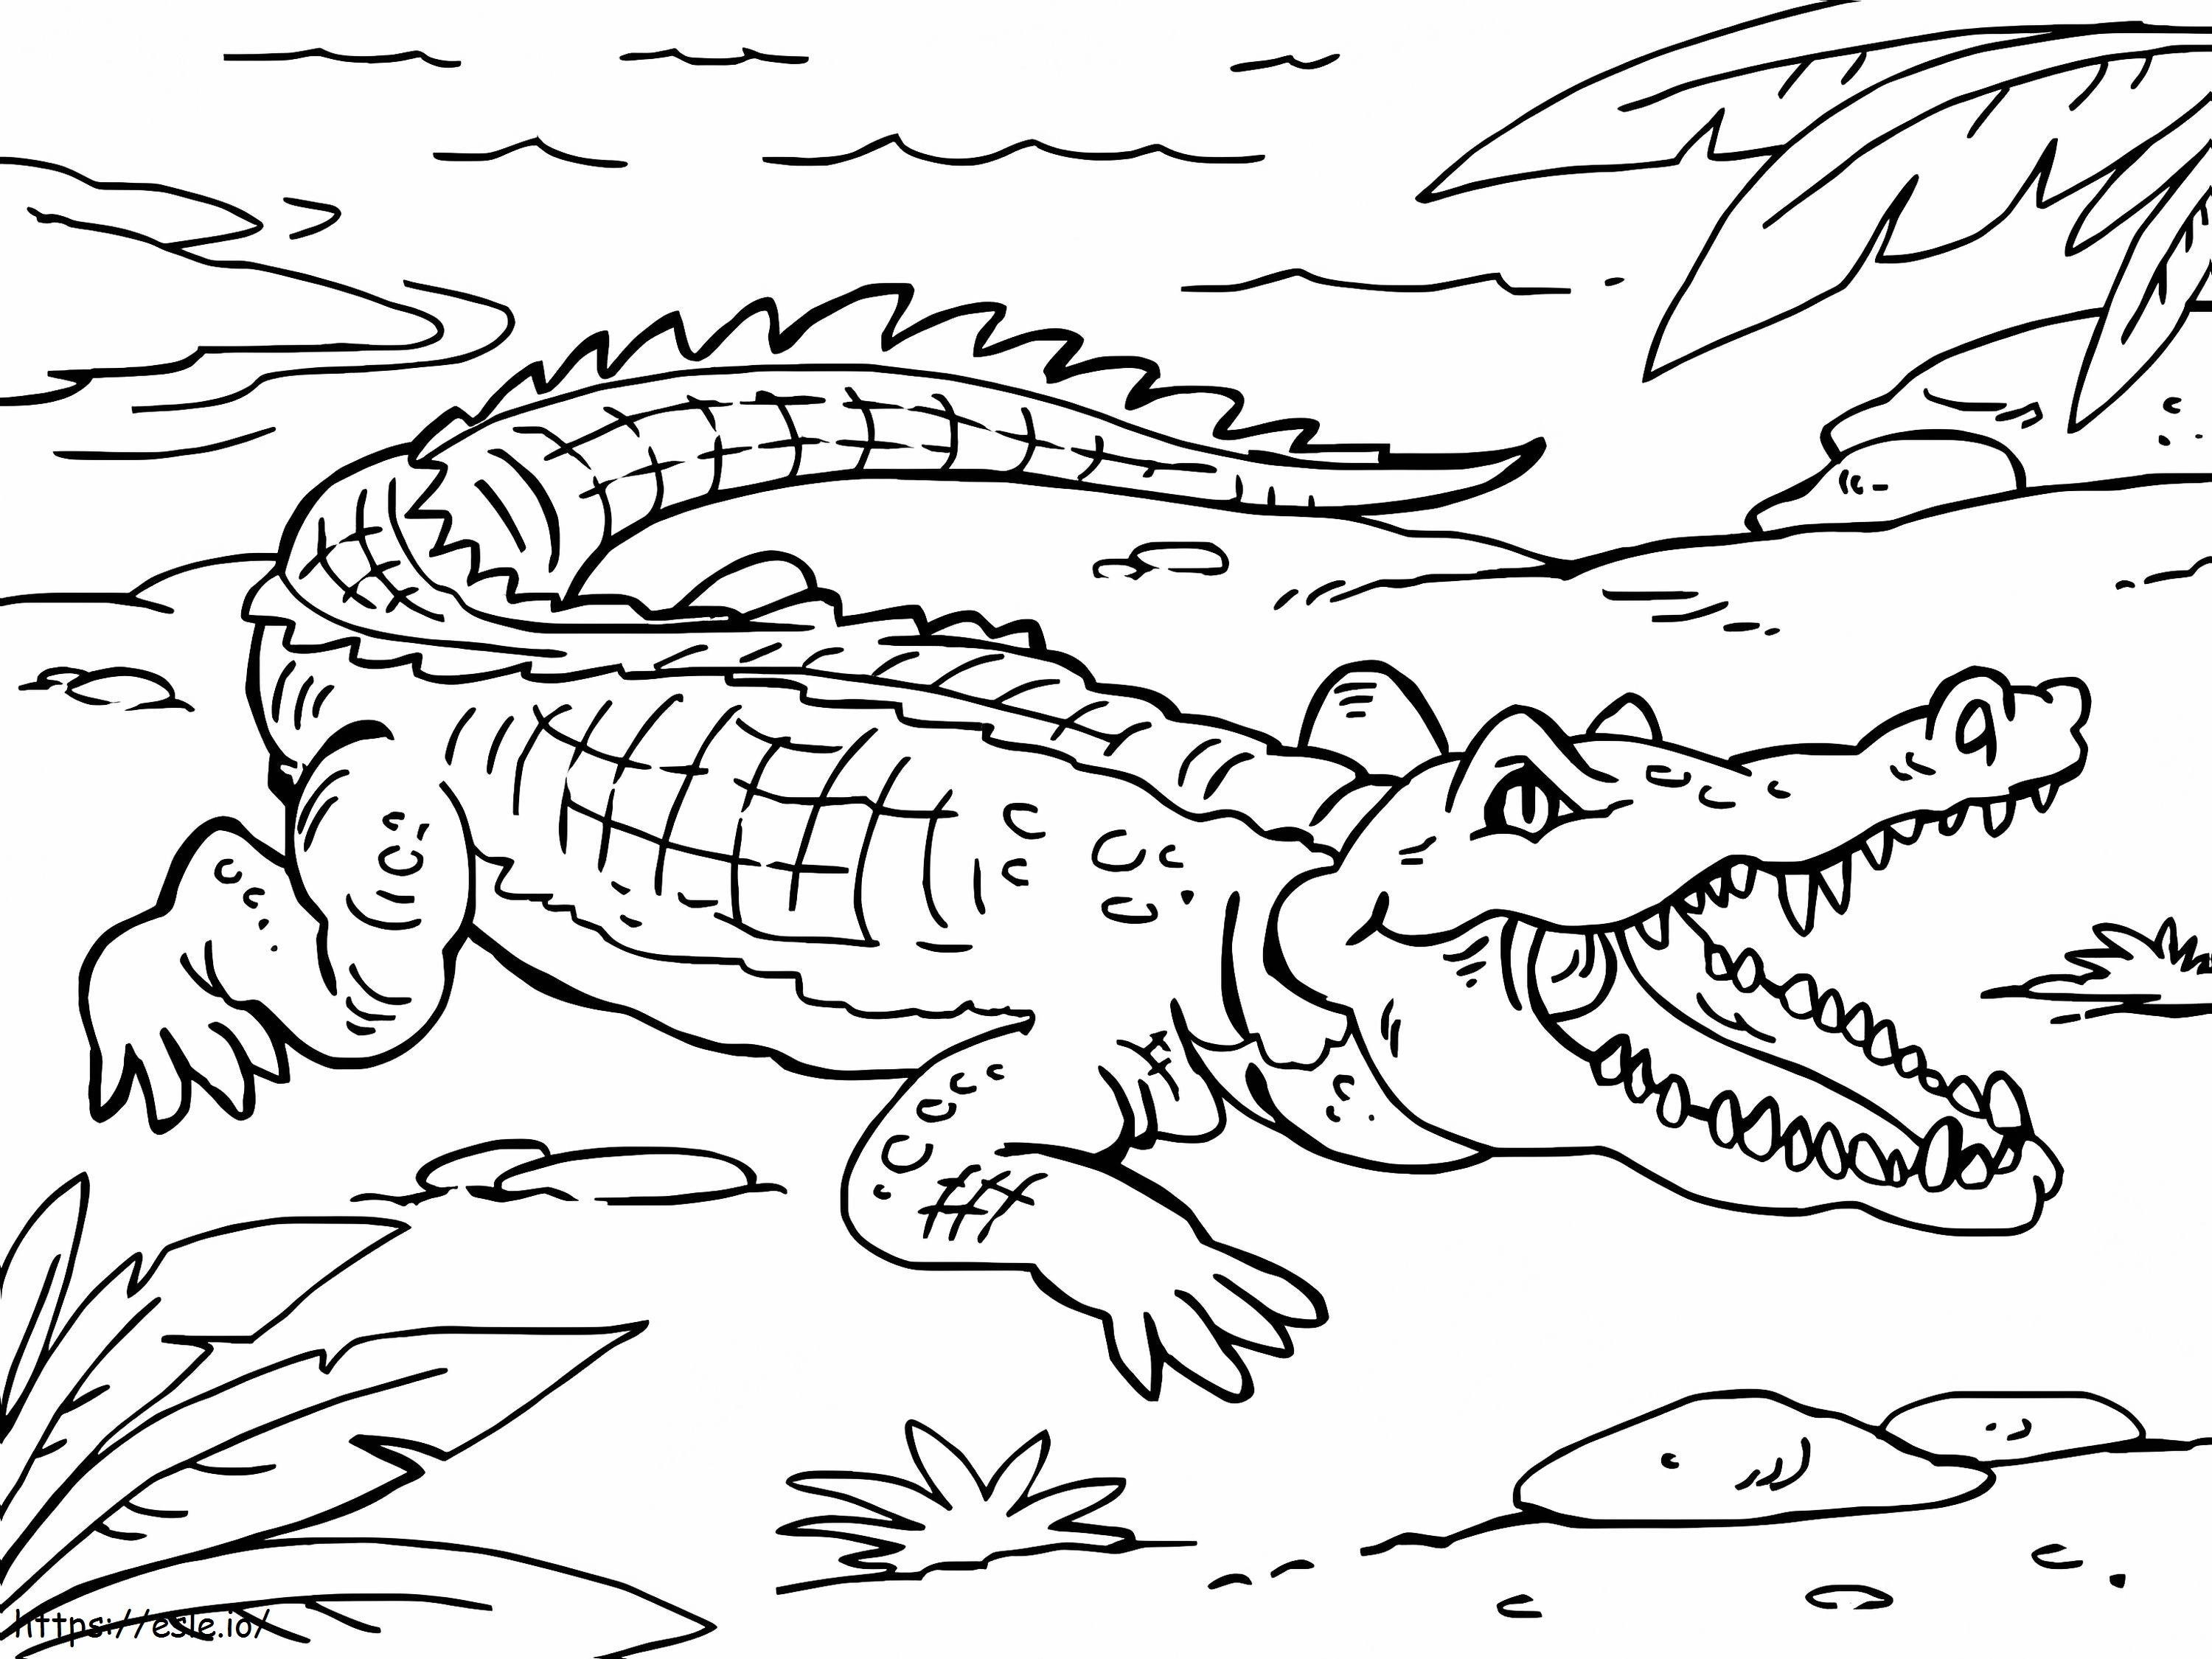 Normal Crocodile 1 coloring page